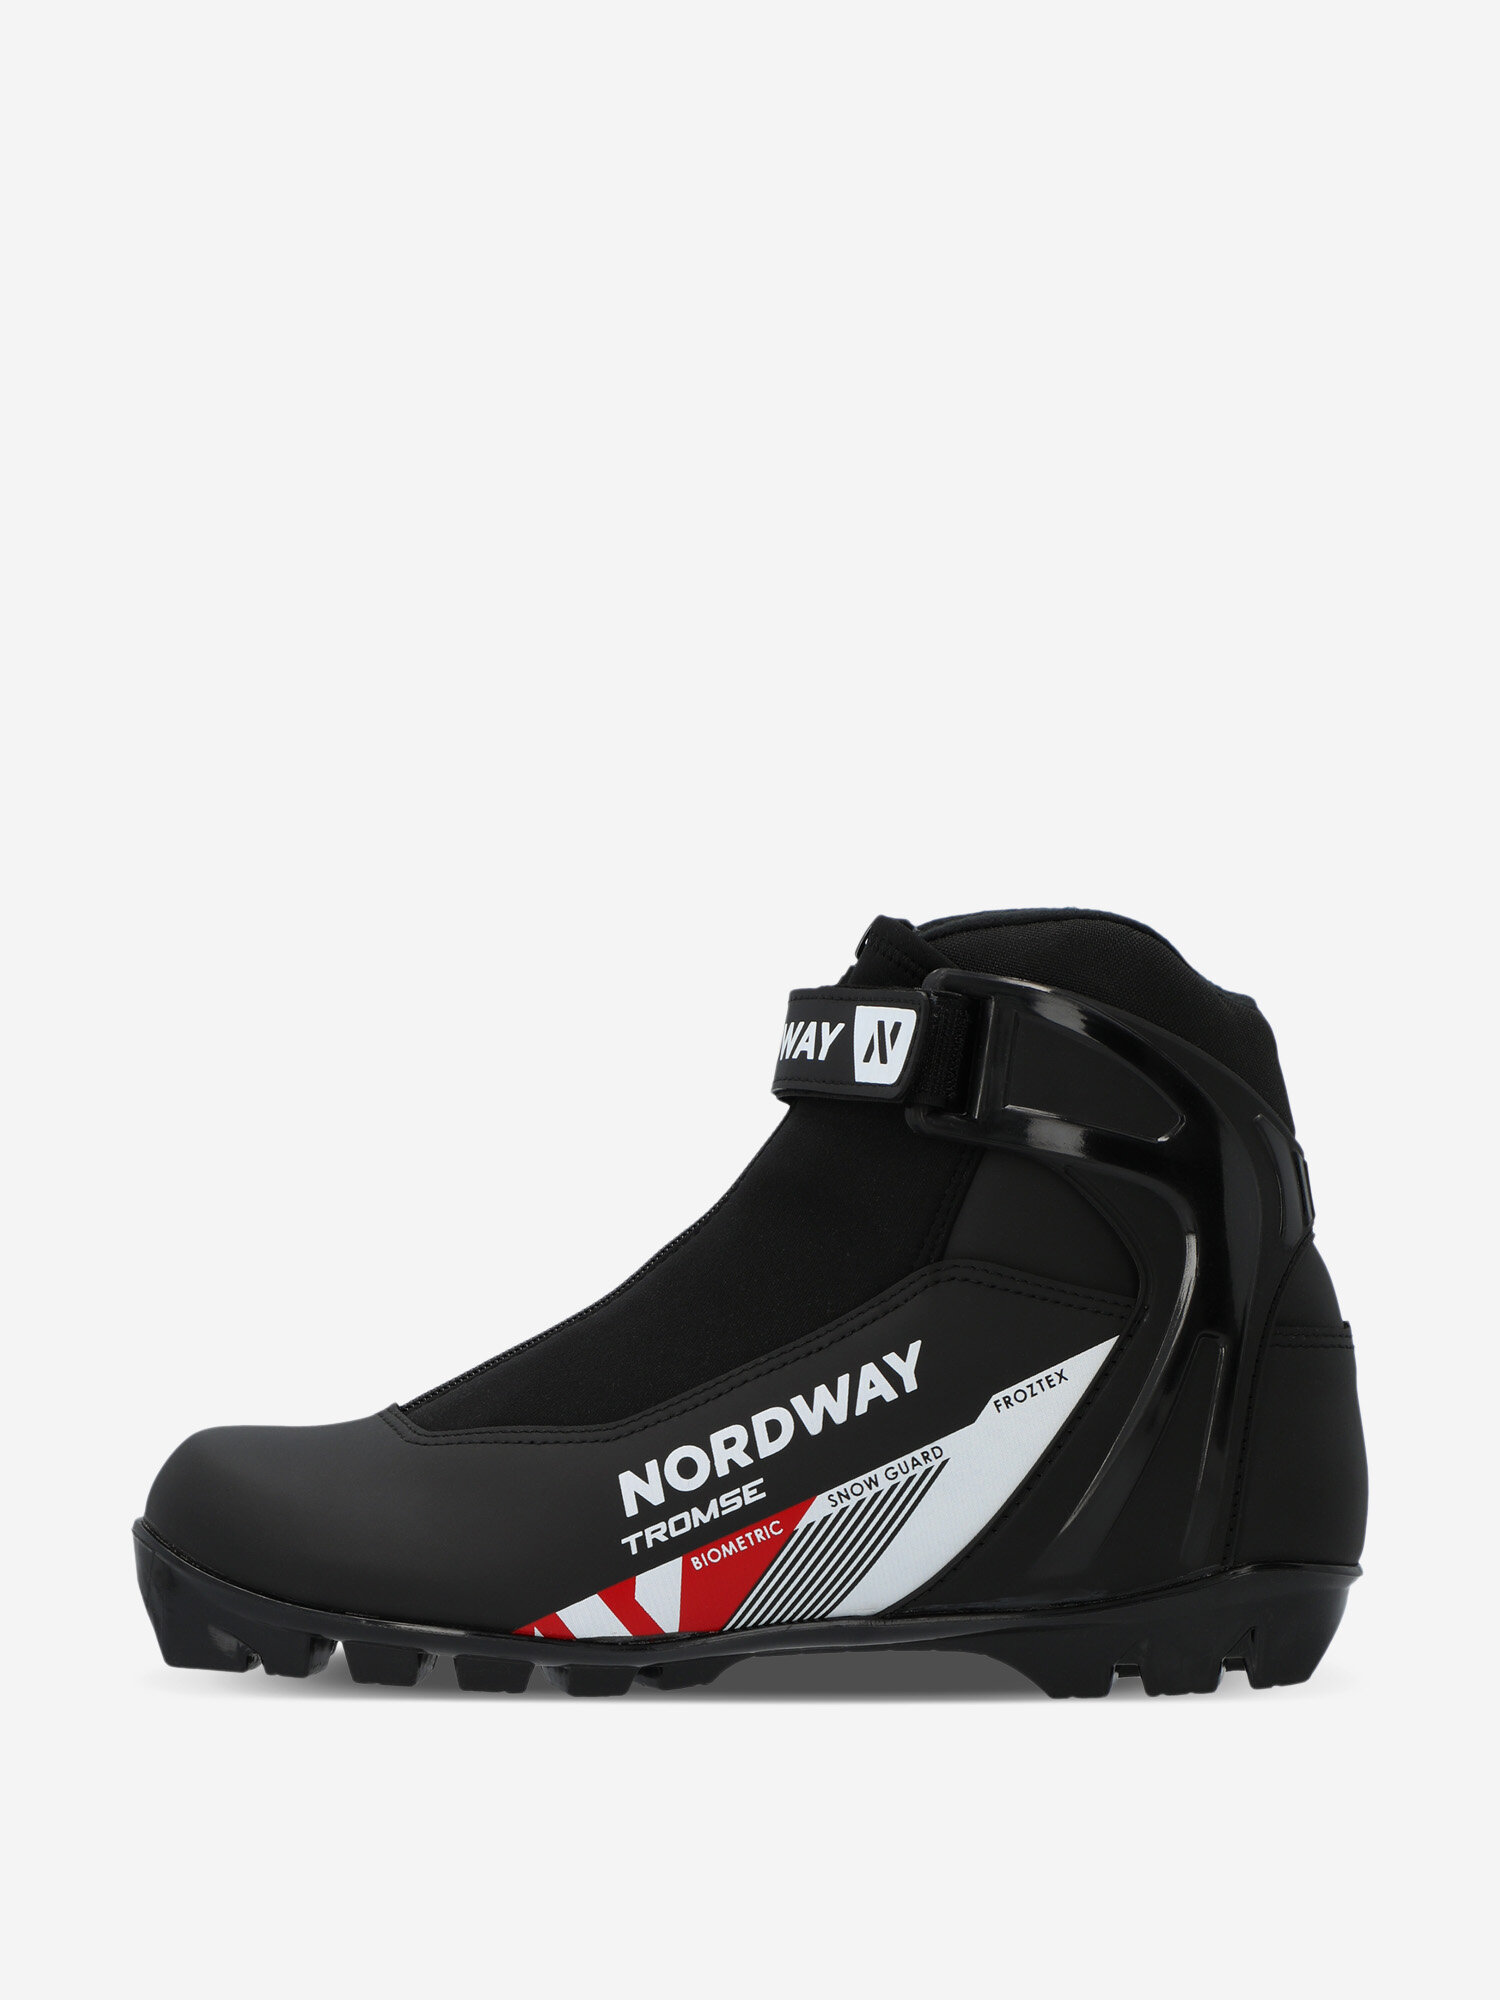 Ботинки для беговых лыж Nordway Tromse NNN Черный; RUS: 45, Ориг: 46